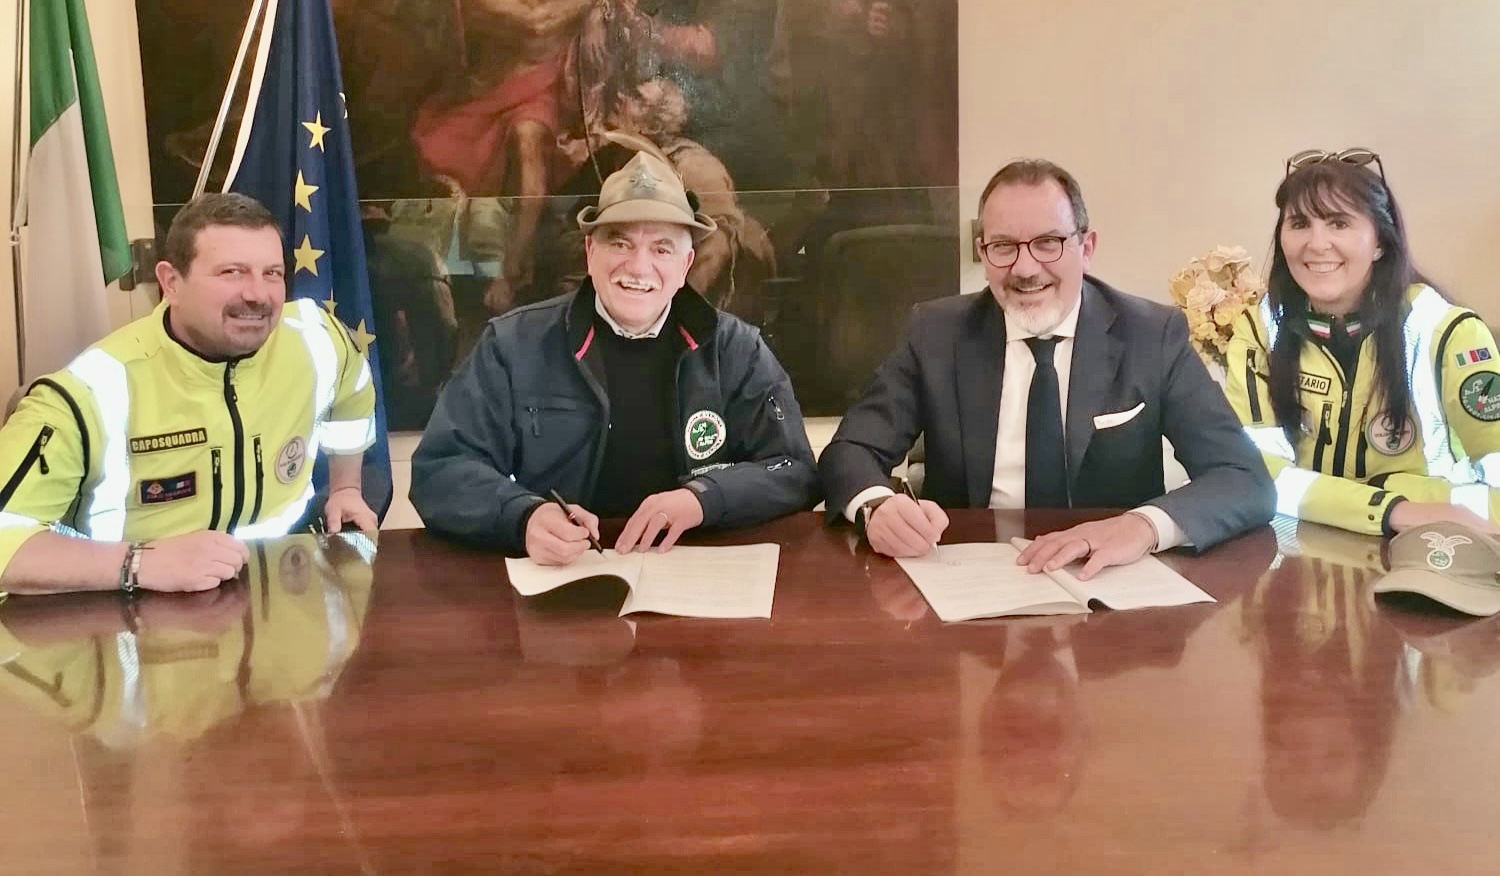 Stipulata la nuova convenzione fra il comune di Villafranca e l’Associazione Nazionale Alpini per la Protezione Civile